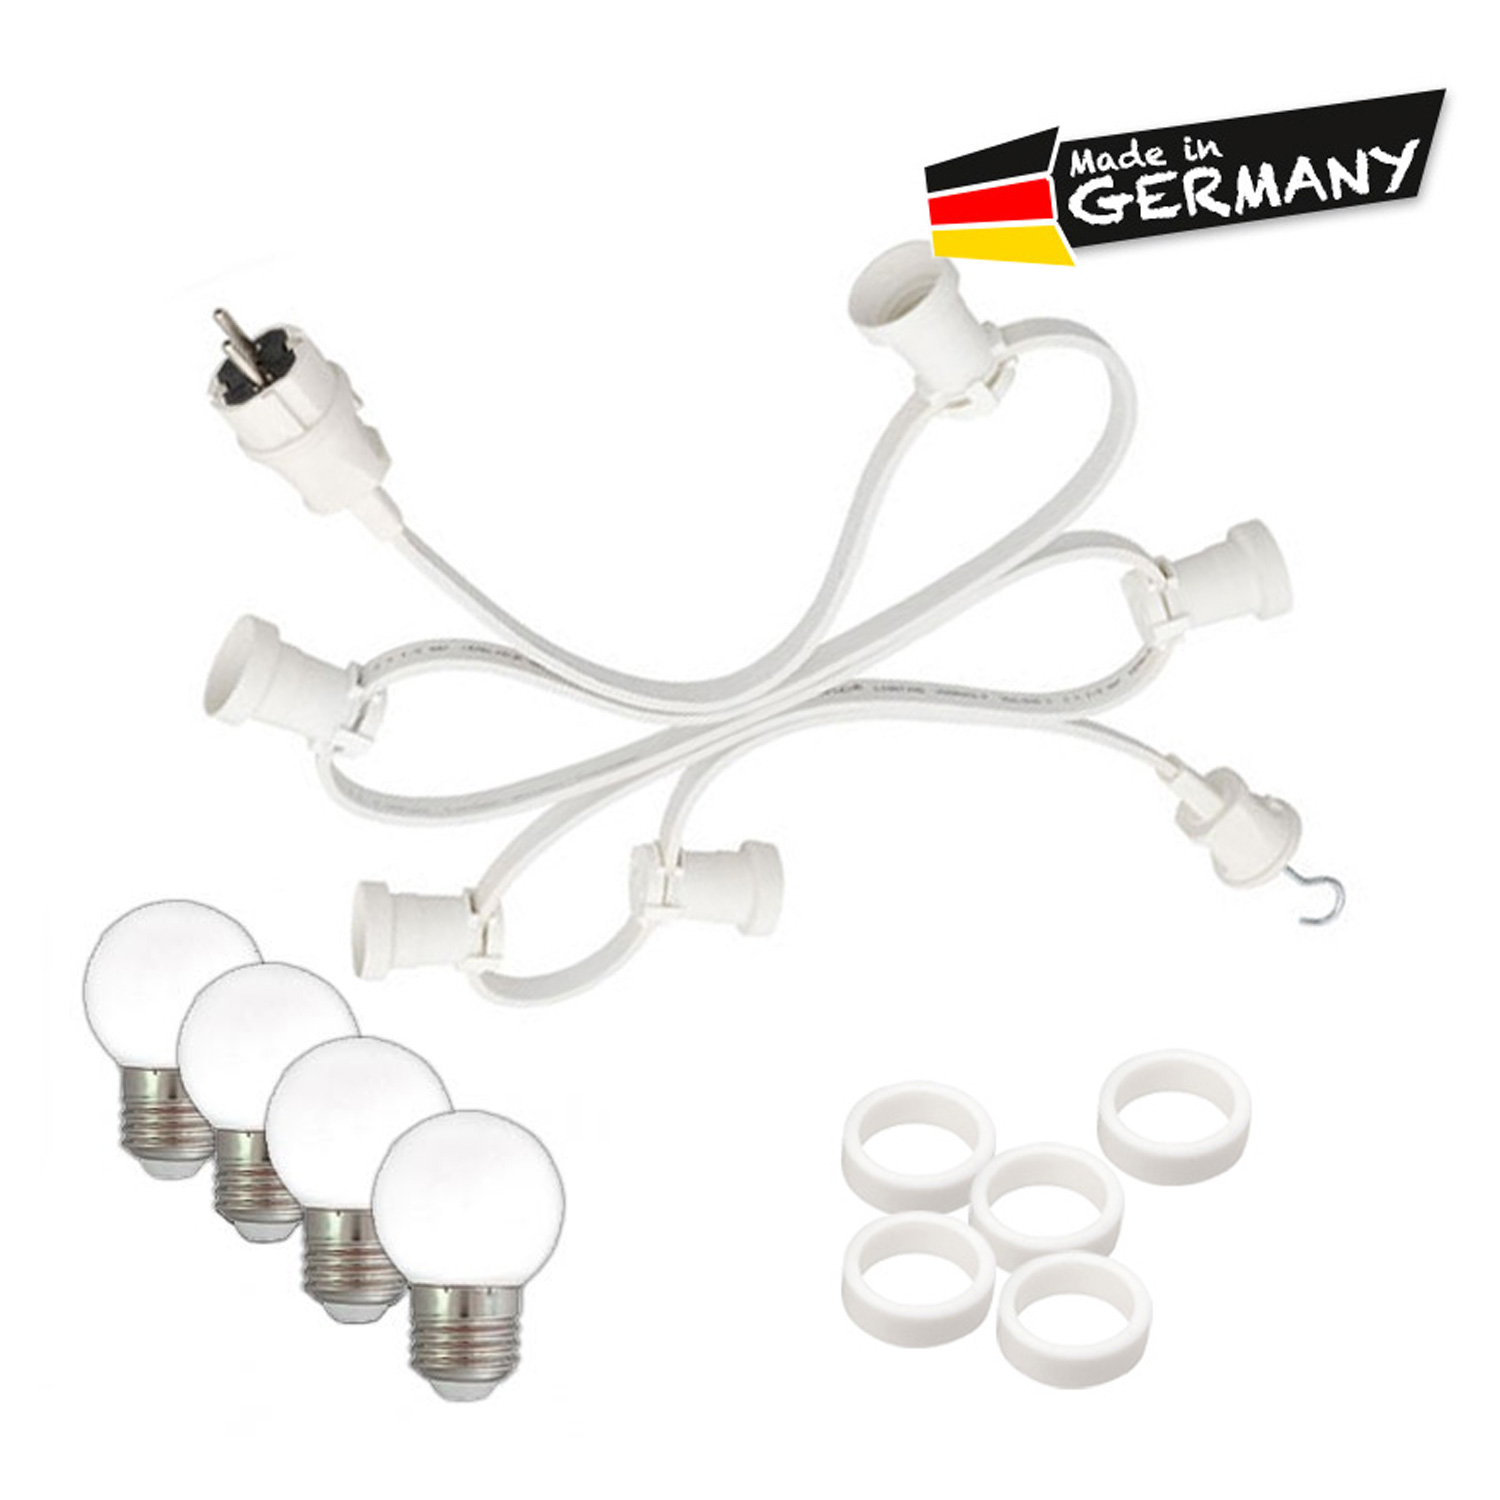 Illu-/Partylichterkette 30m - Außenlichterkette - Made in Germany - 50 x warmweiße LED Kugellampen